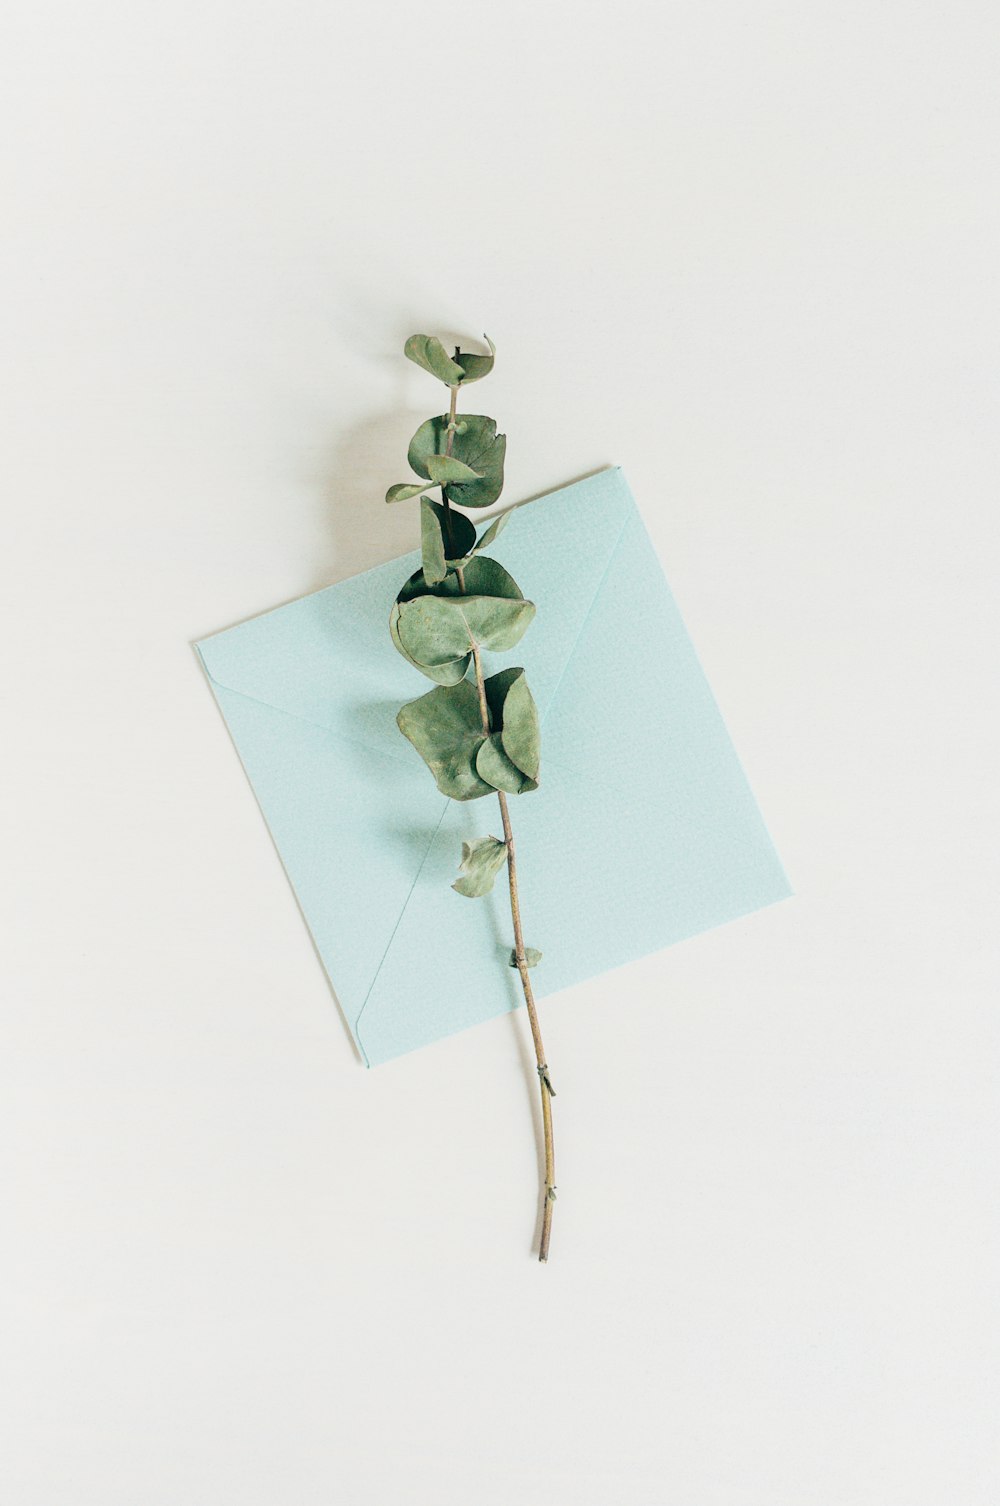 Un seul plant d'eucalyptus au-dessus d'une enveloppe bleue photo – Photo  Feuille Gratuite sur Unsplash